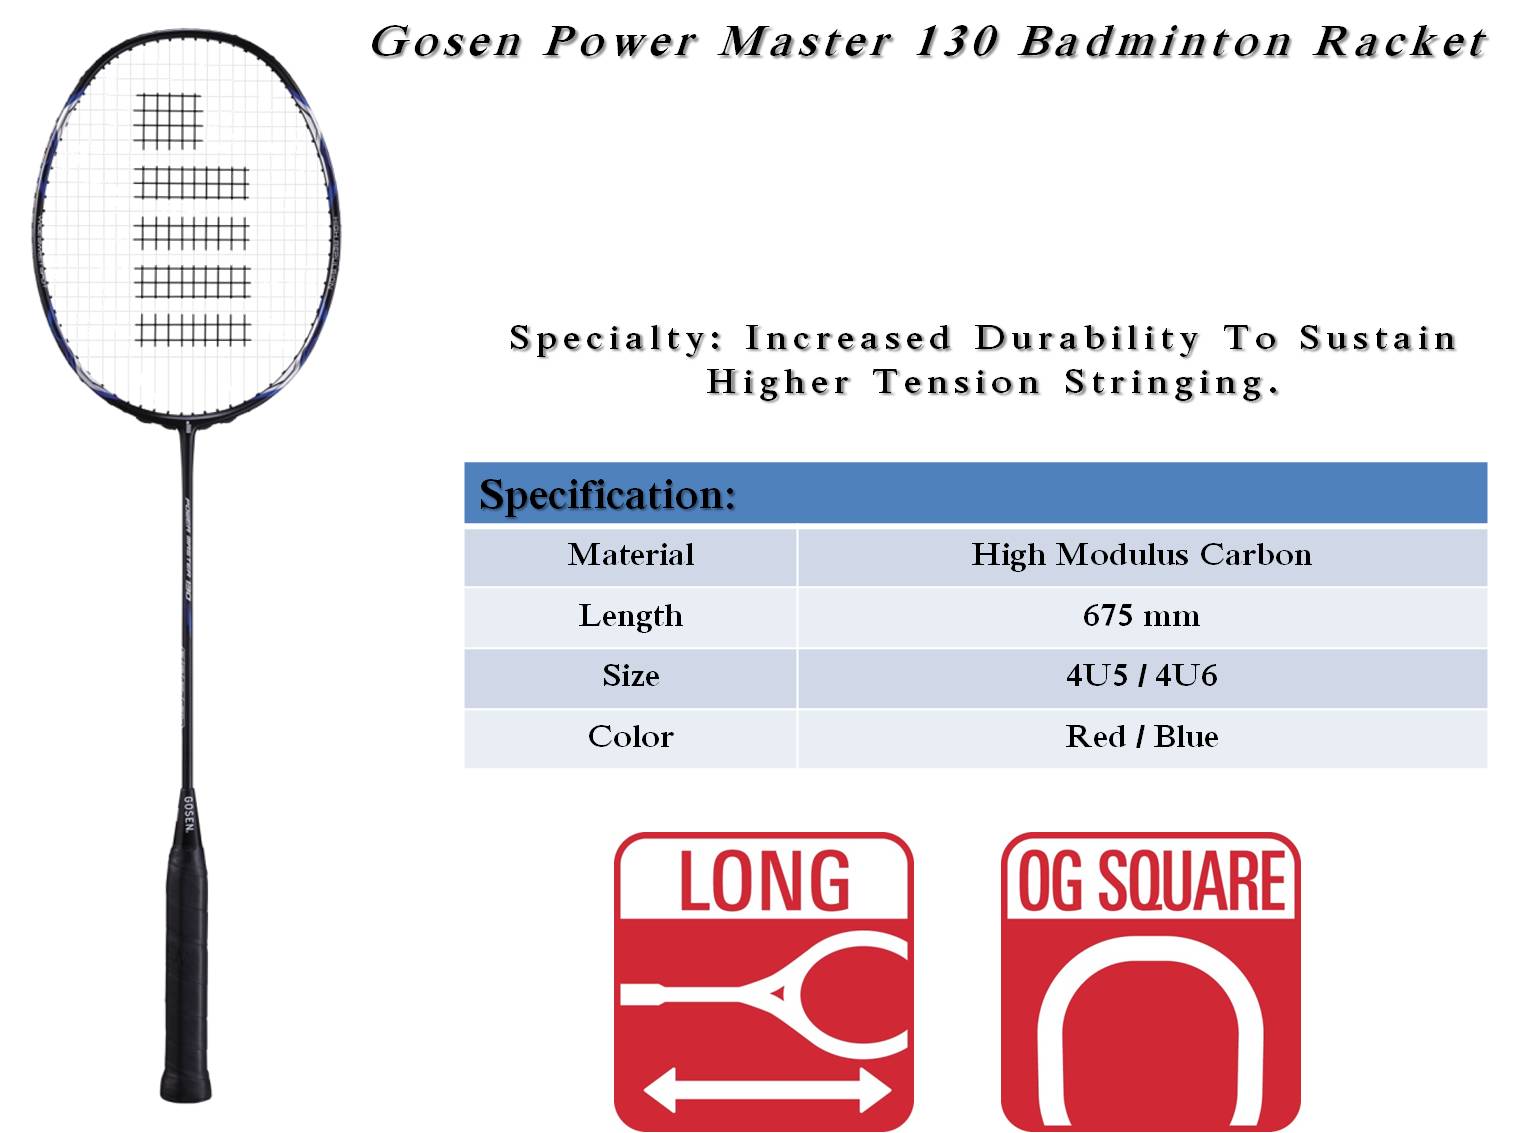 Gosem_Power_Master_130_Badminton_Racket_Khelmart